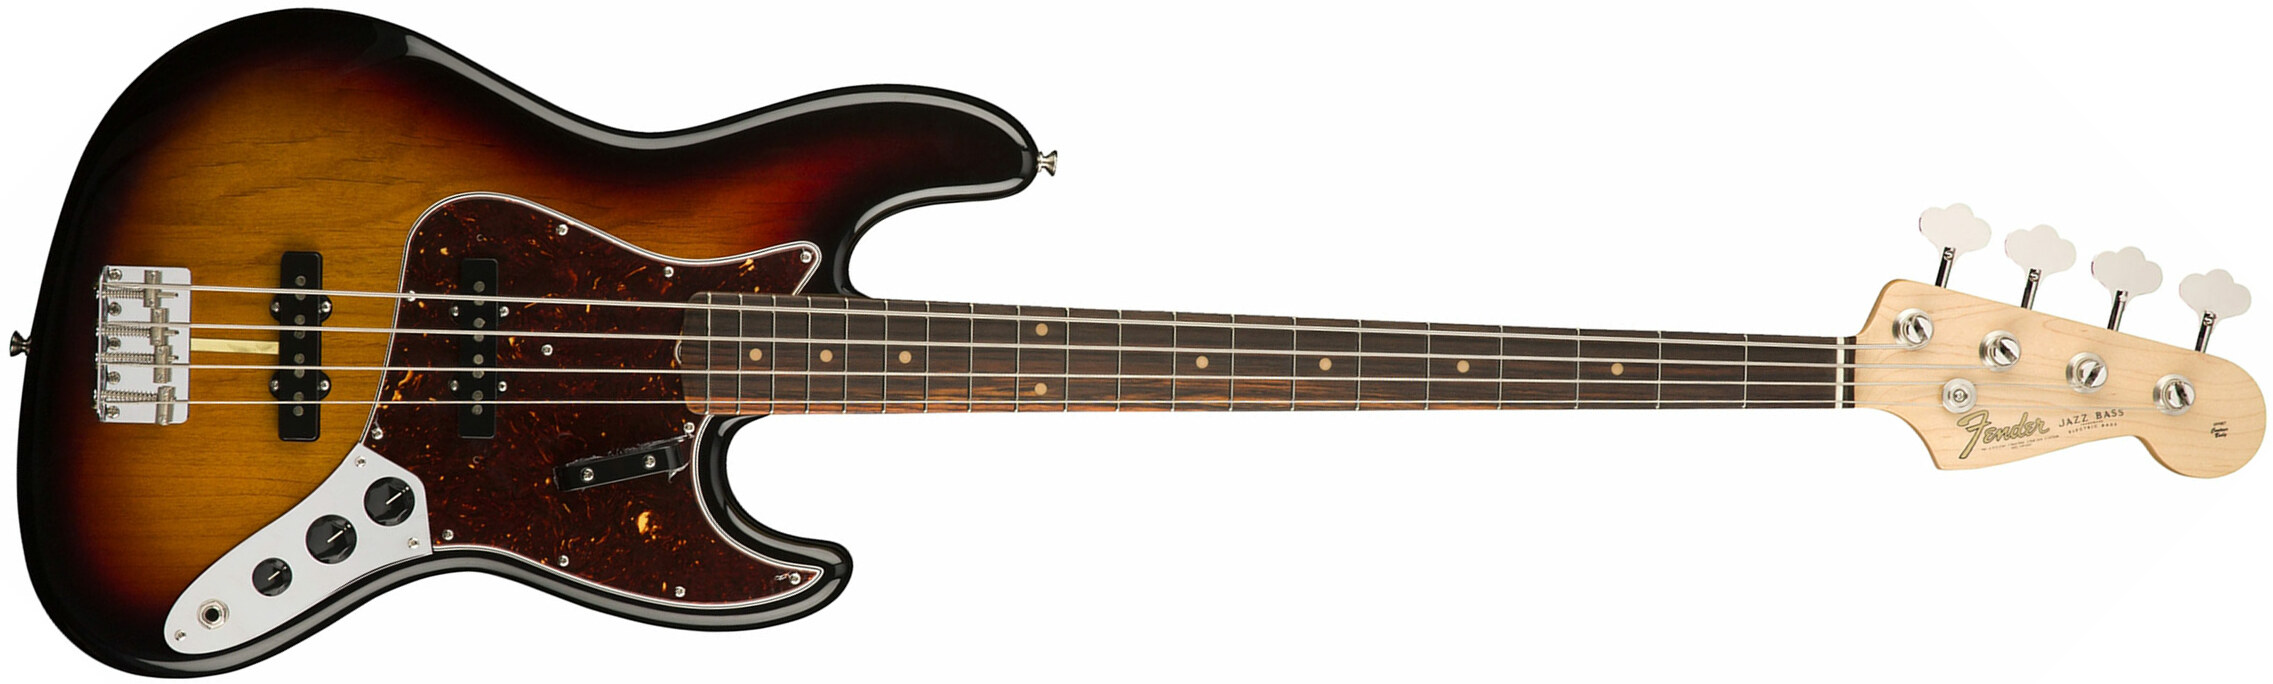 Fender Jazz Bass '60s American Original Usa Rw - 3-color Sunburst - Basse Électrique Solid Body - Main picture